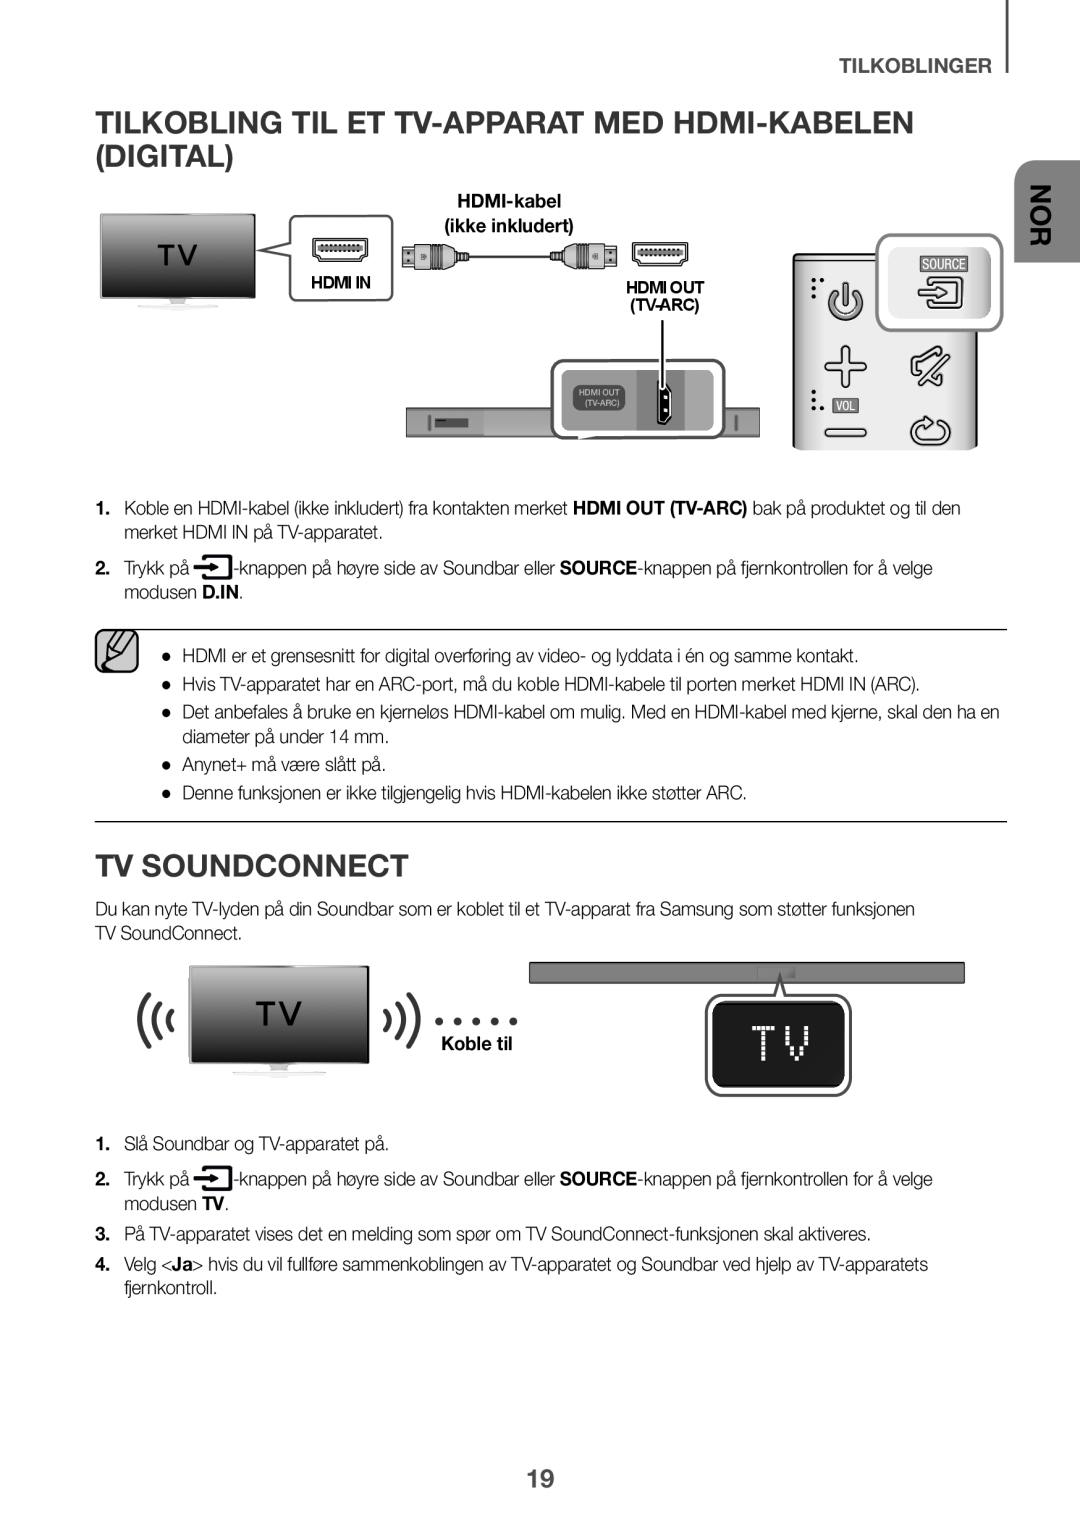 Samsung HW-K660/XE manual Tilkobling til et TV-apparat med HDMI-kabelen digital, TV SoundConnect, tilkoblinger, Koble til 